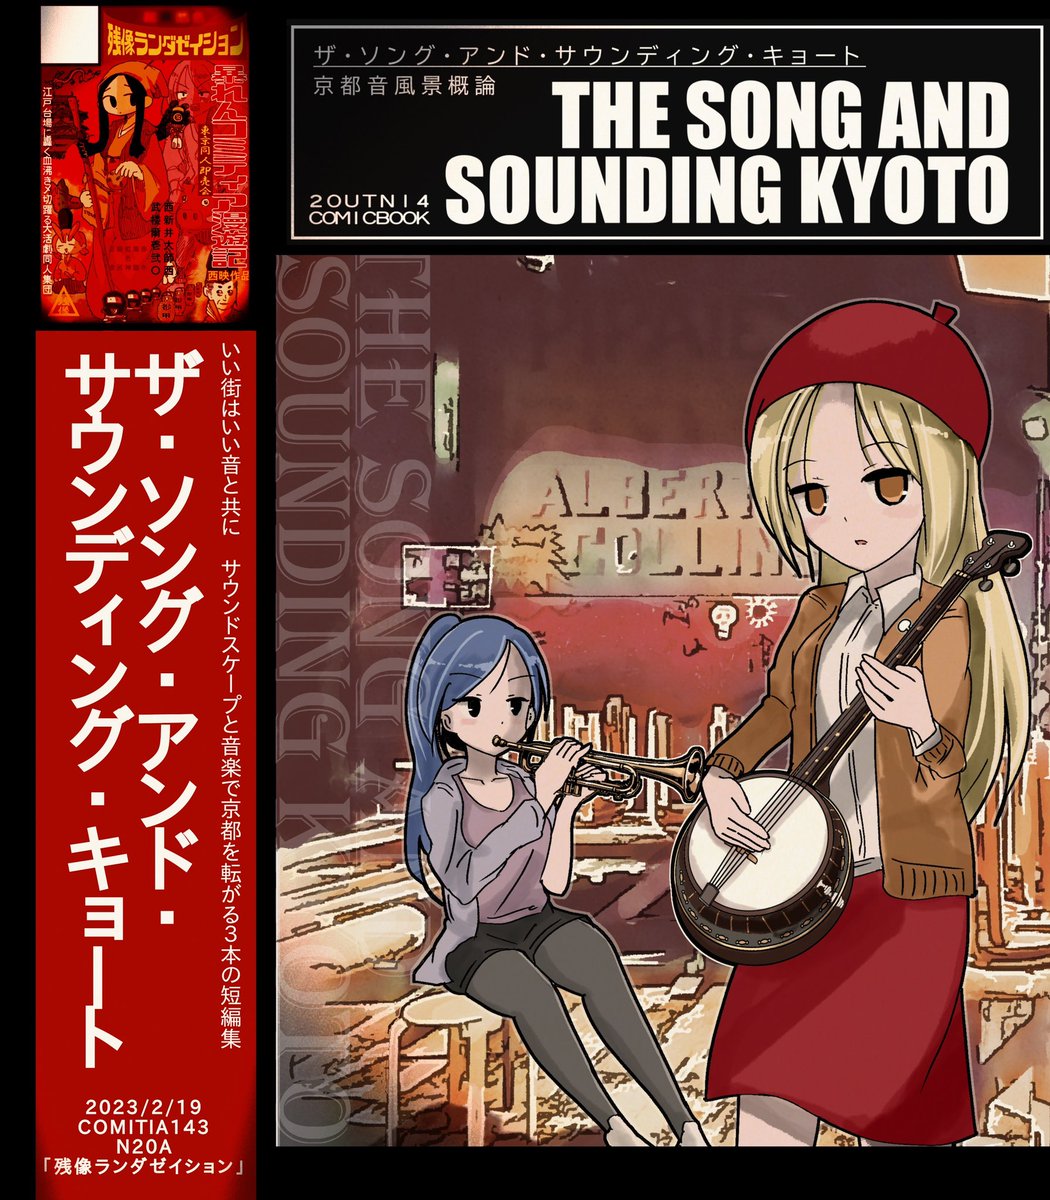 来たる2月19日(日)開催、東京コミティア143にて
新刊『ザ・ソング・アンド・サウンティング・キョート』を頒布します。

いい街はいい音と共に。京都の「音風景:サウンドスケープ」と音楽をテーマにした短編集。
スペースNo.N20a「残像ランダゼイション」にて転がりながらお待ちしています🎼 